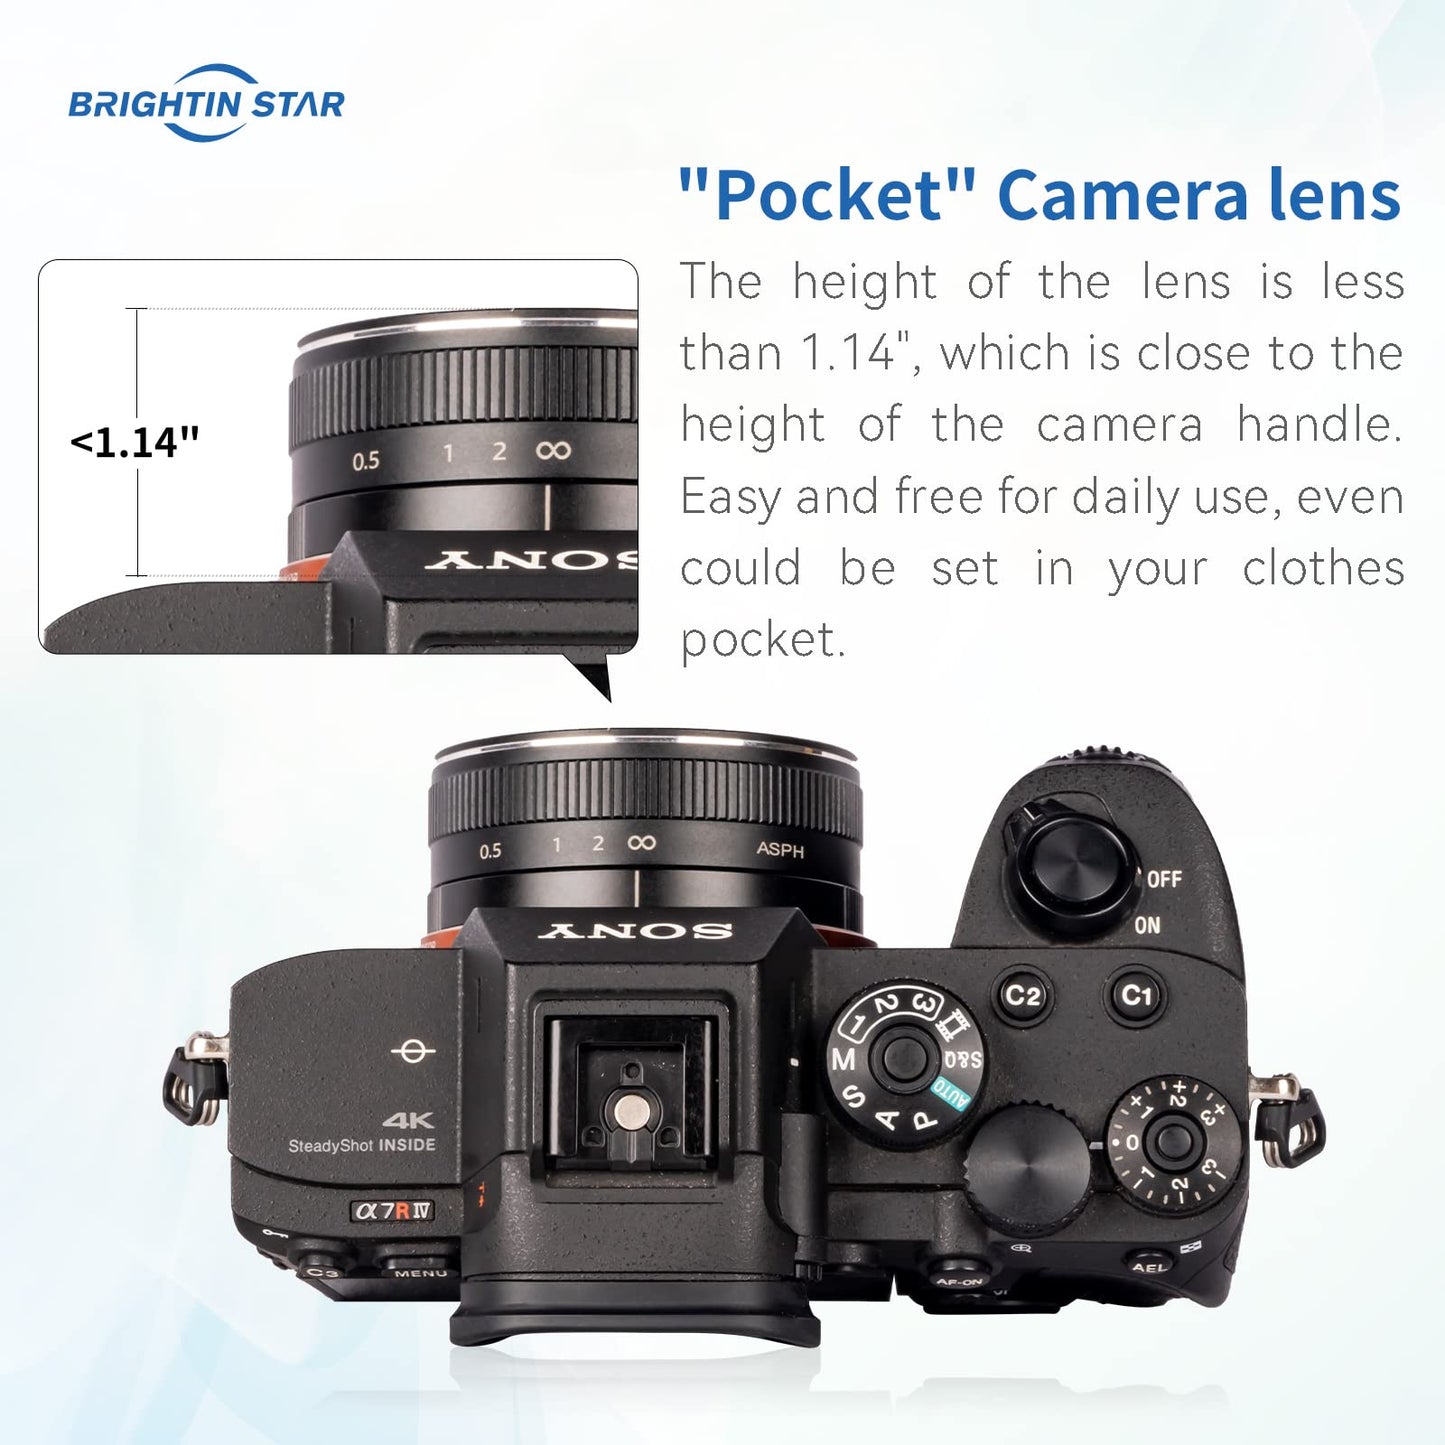 Brightin Star 23mm F5.6 Full Frame Manual Focus Prime Lens